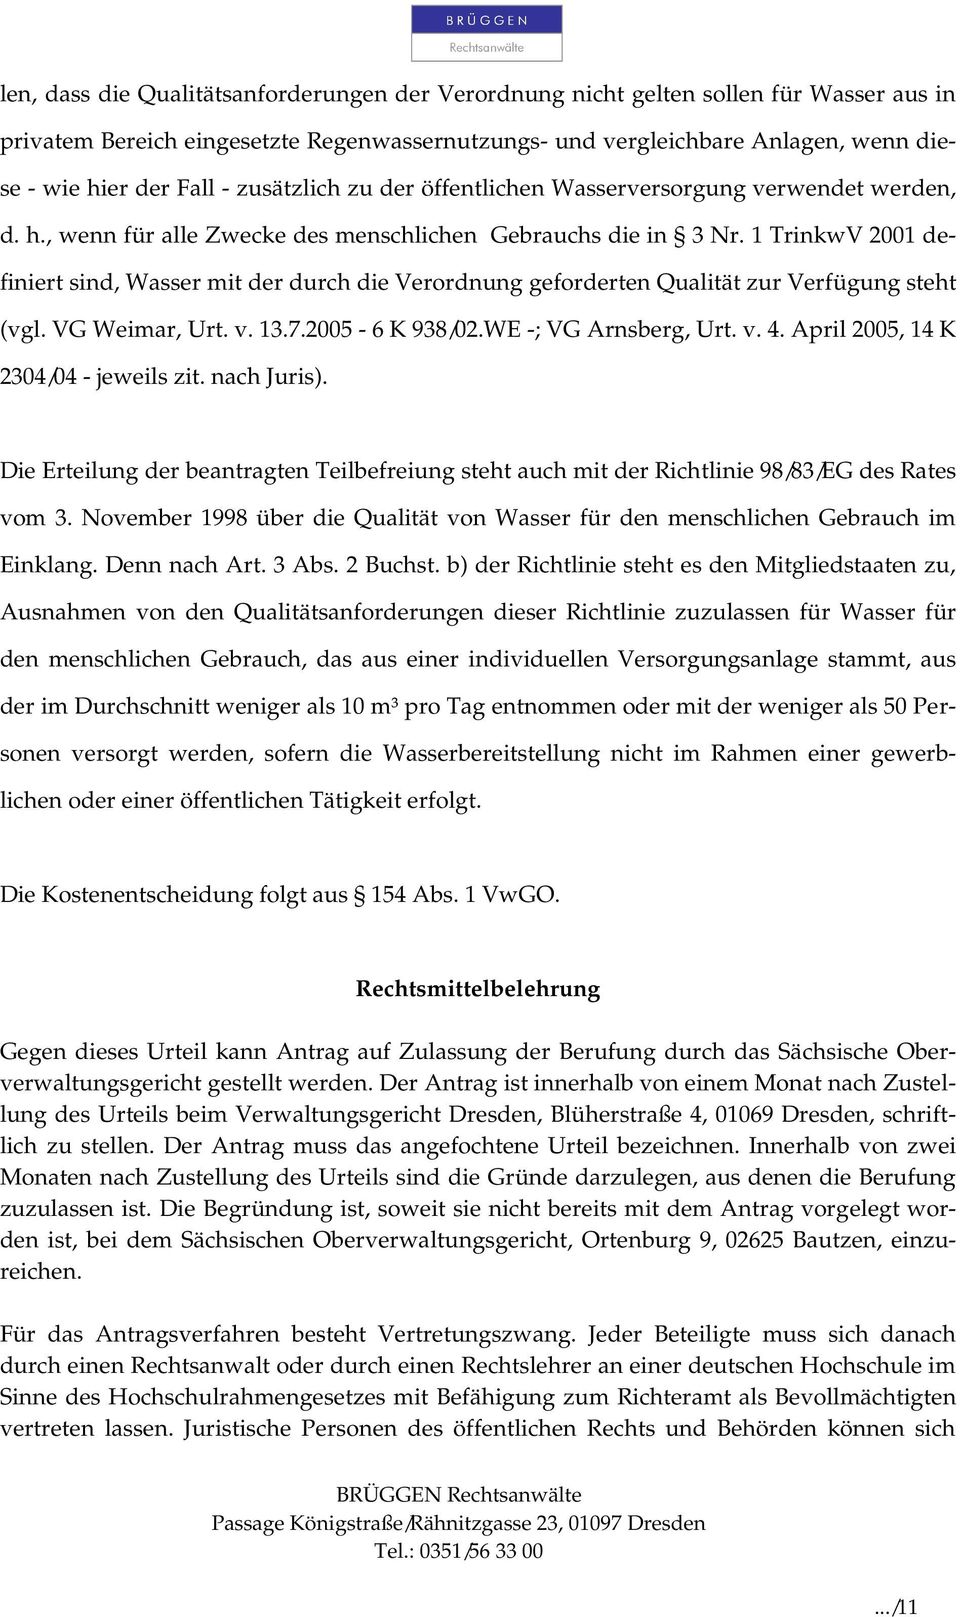 1 TrinkwV 2001 definiert sind, Wasser mit der durch die Verordnung geforderten Qualität zur Verfügung steht (vgl. VG Weimar, Urt. v. 13.7.2005-6 K 938/02.WE -; VG Arnsberg, Urt. v. 4.